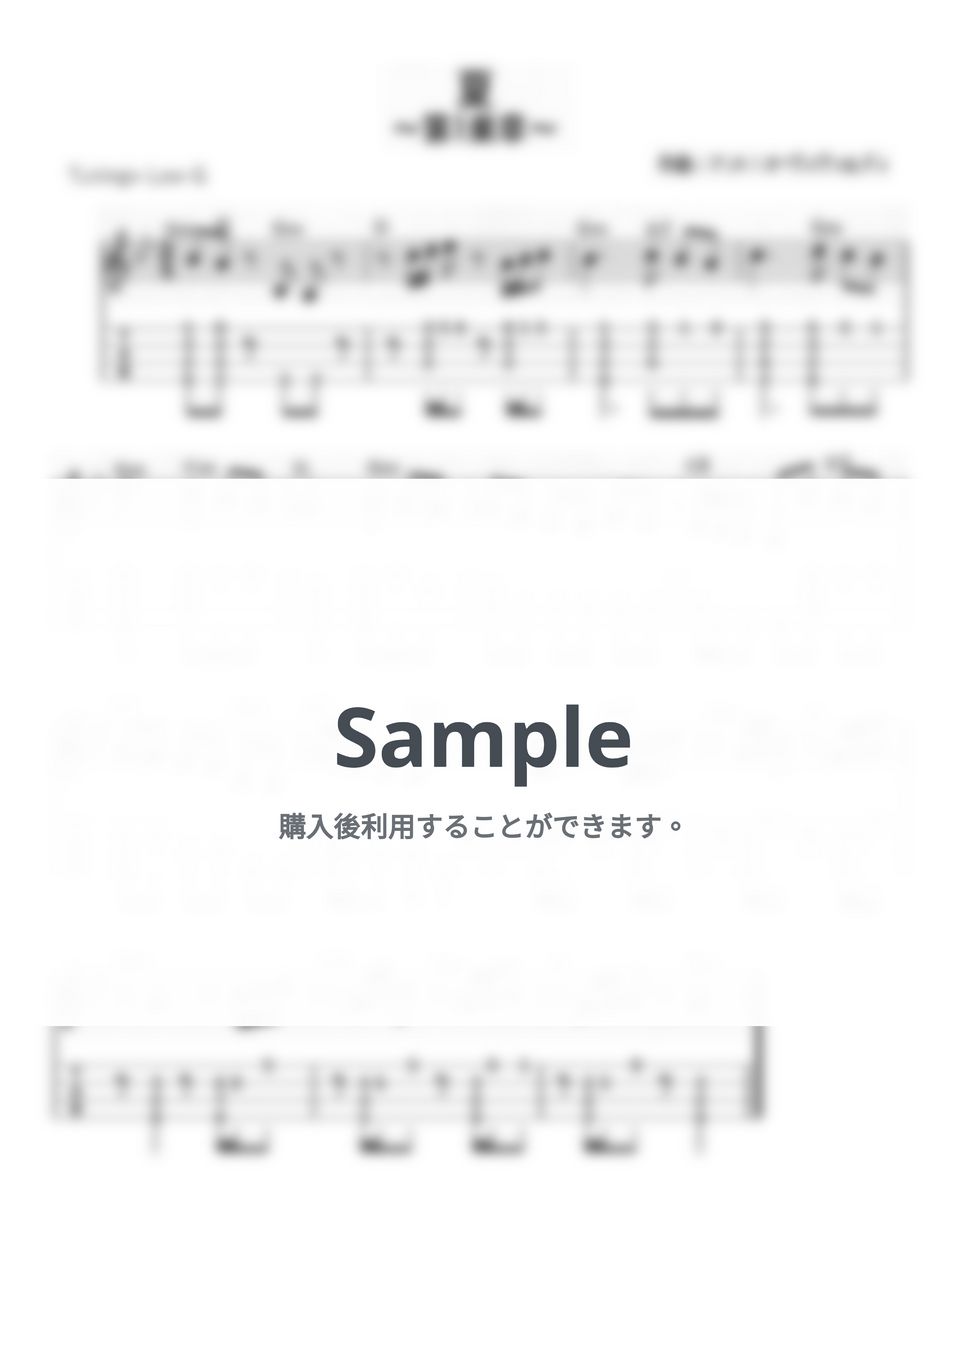 ヴィヴァルディ - 四季 (ｳｸﾚﾚｿﾛ/Low-G/中級) by ukulelepapa